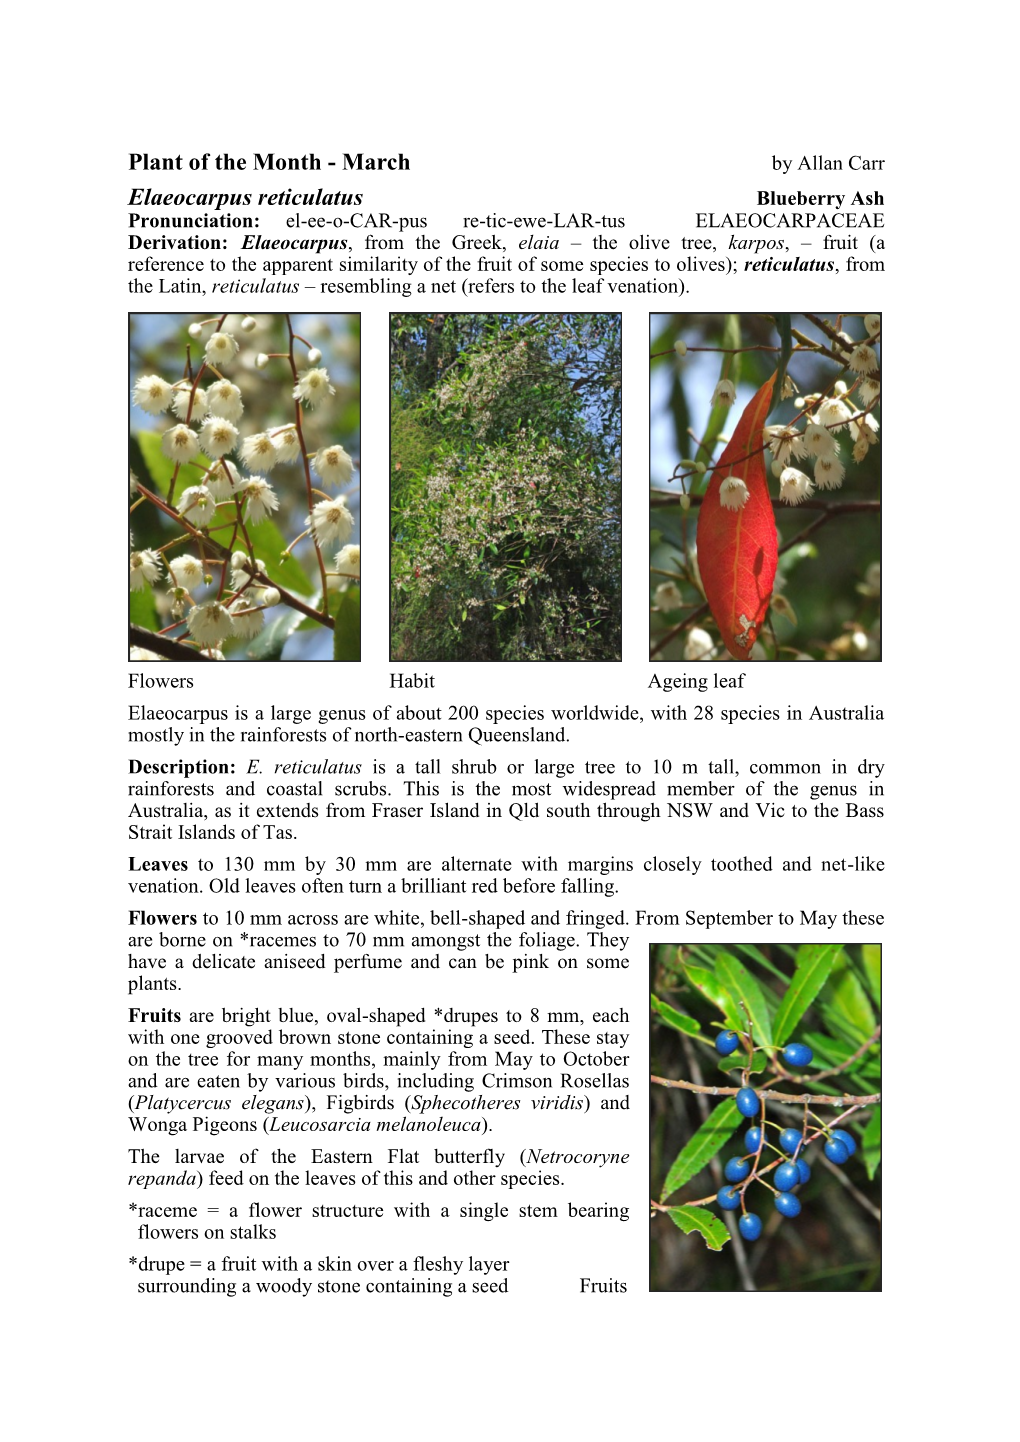 Elaeocarpus Reticulatus